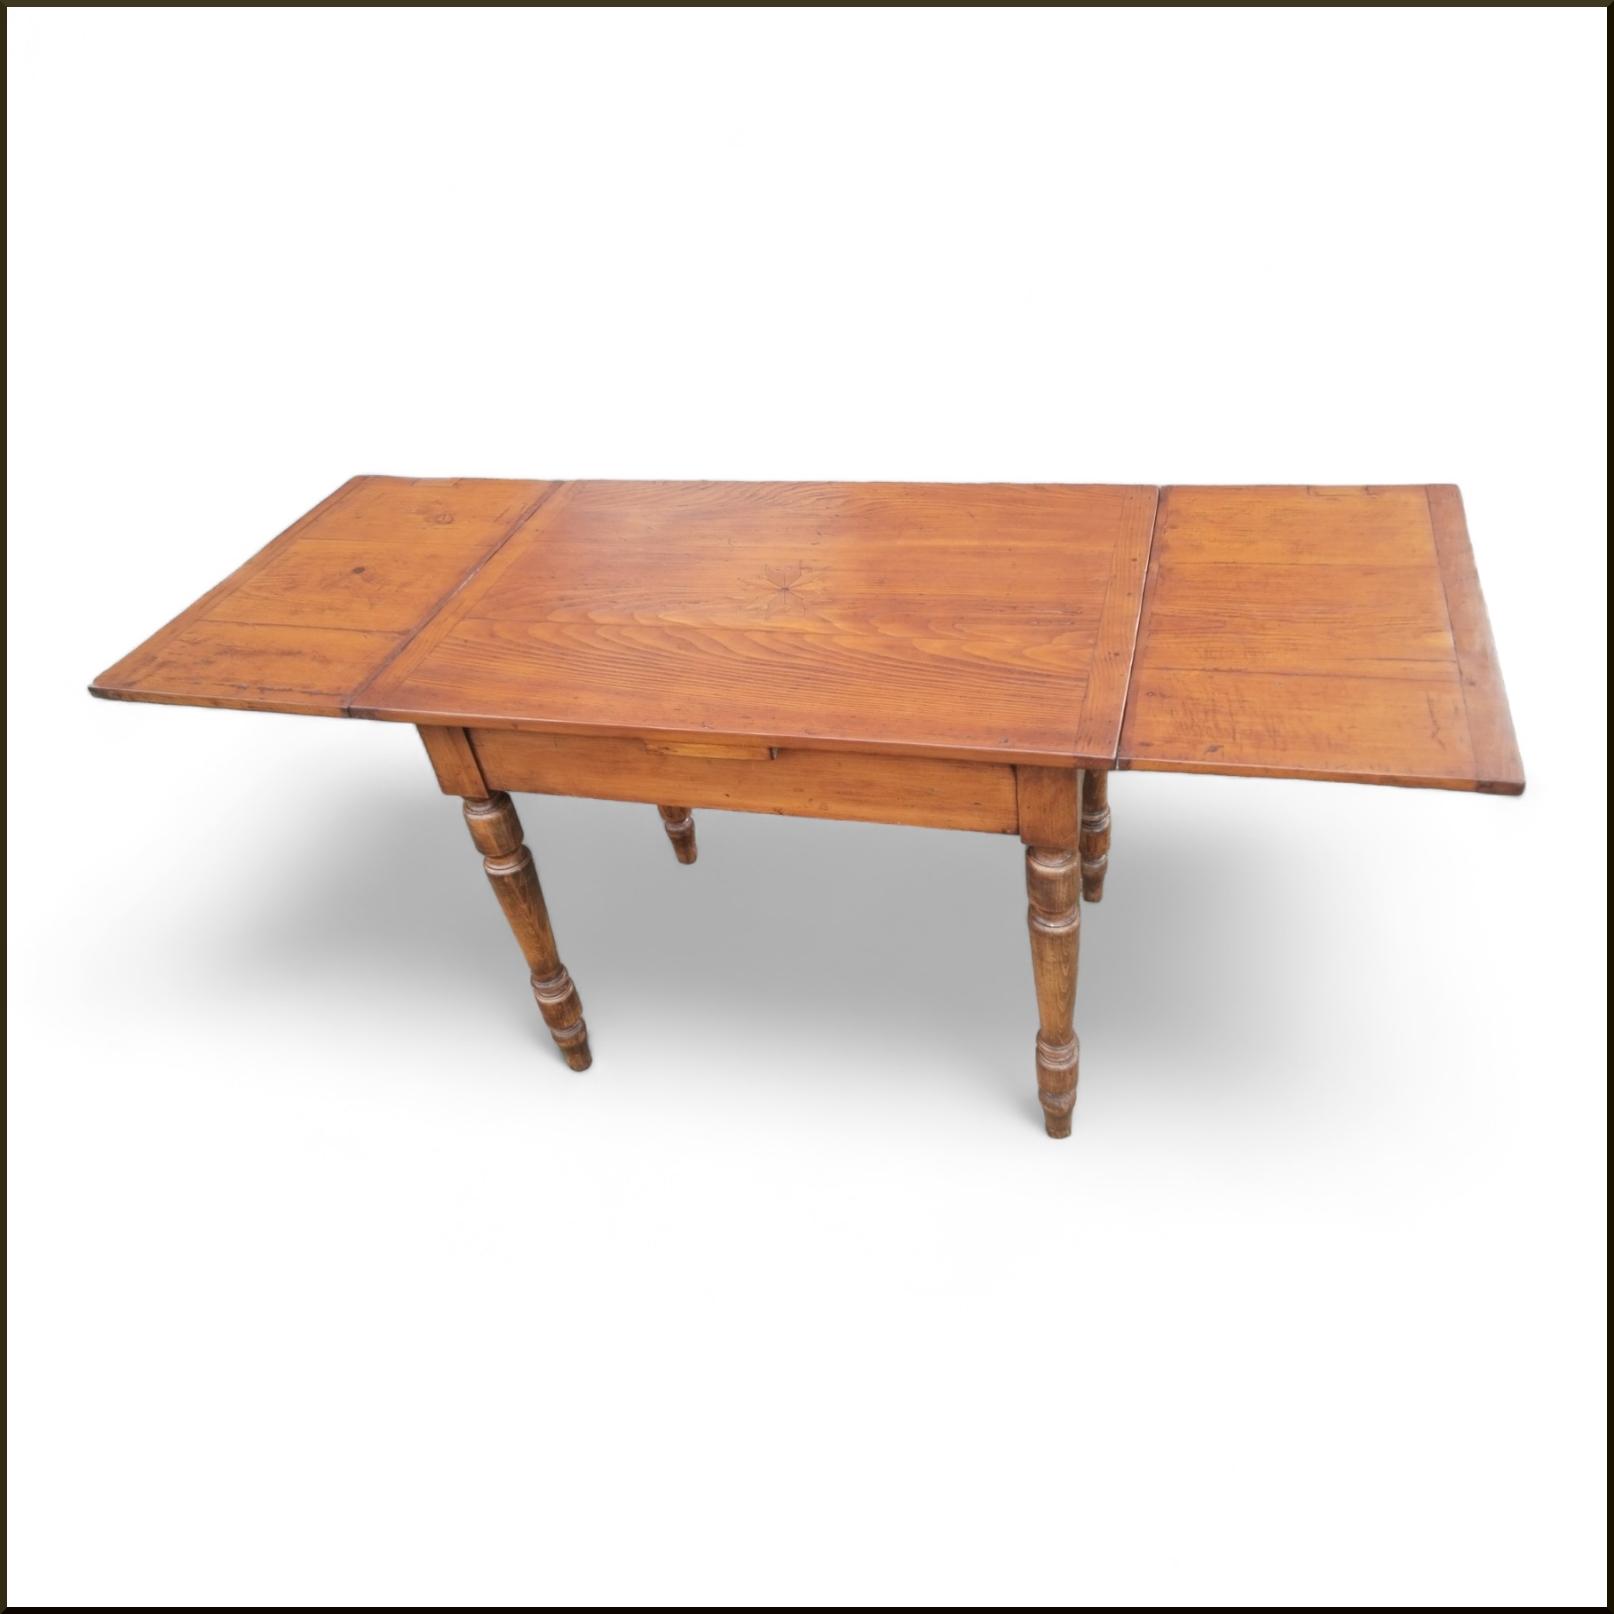 n° prodotto: 1897  Piccolo e particolare tavolo vecchio realizzato con legname antico e gamba tornit